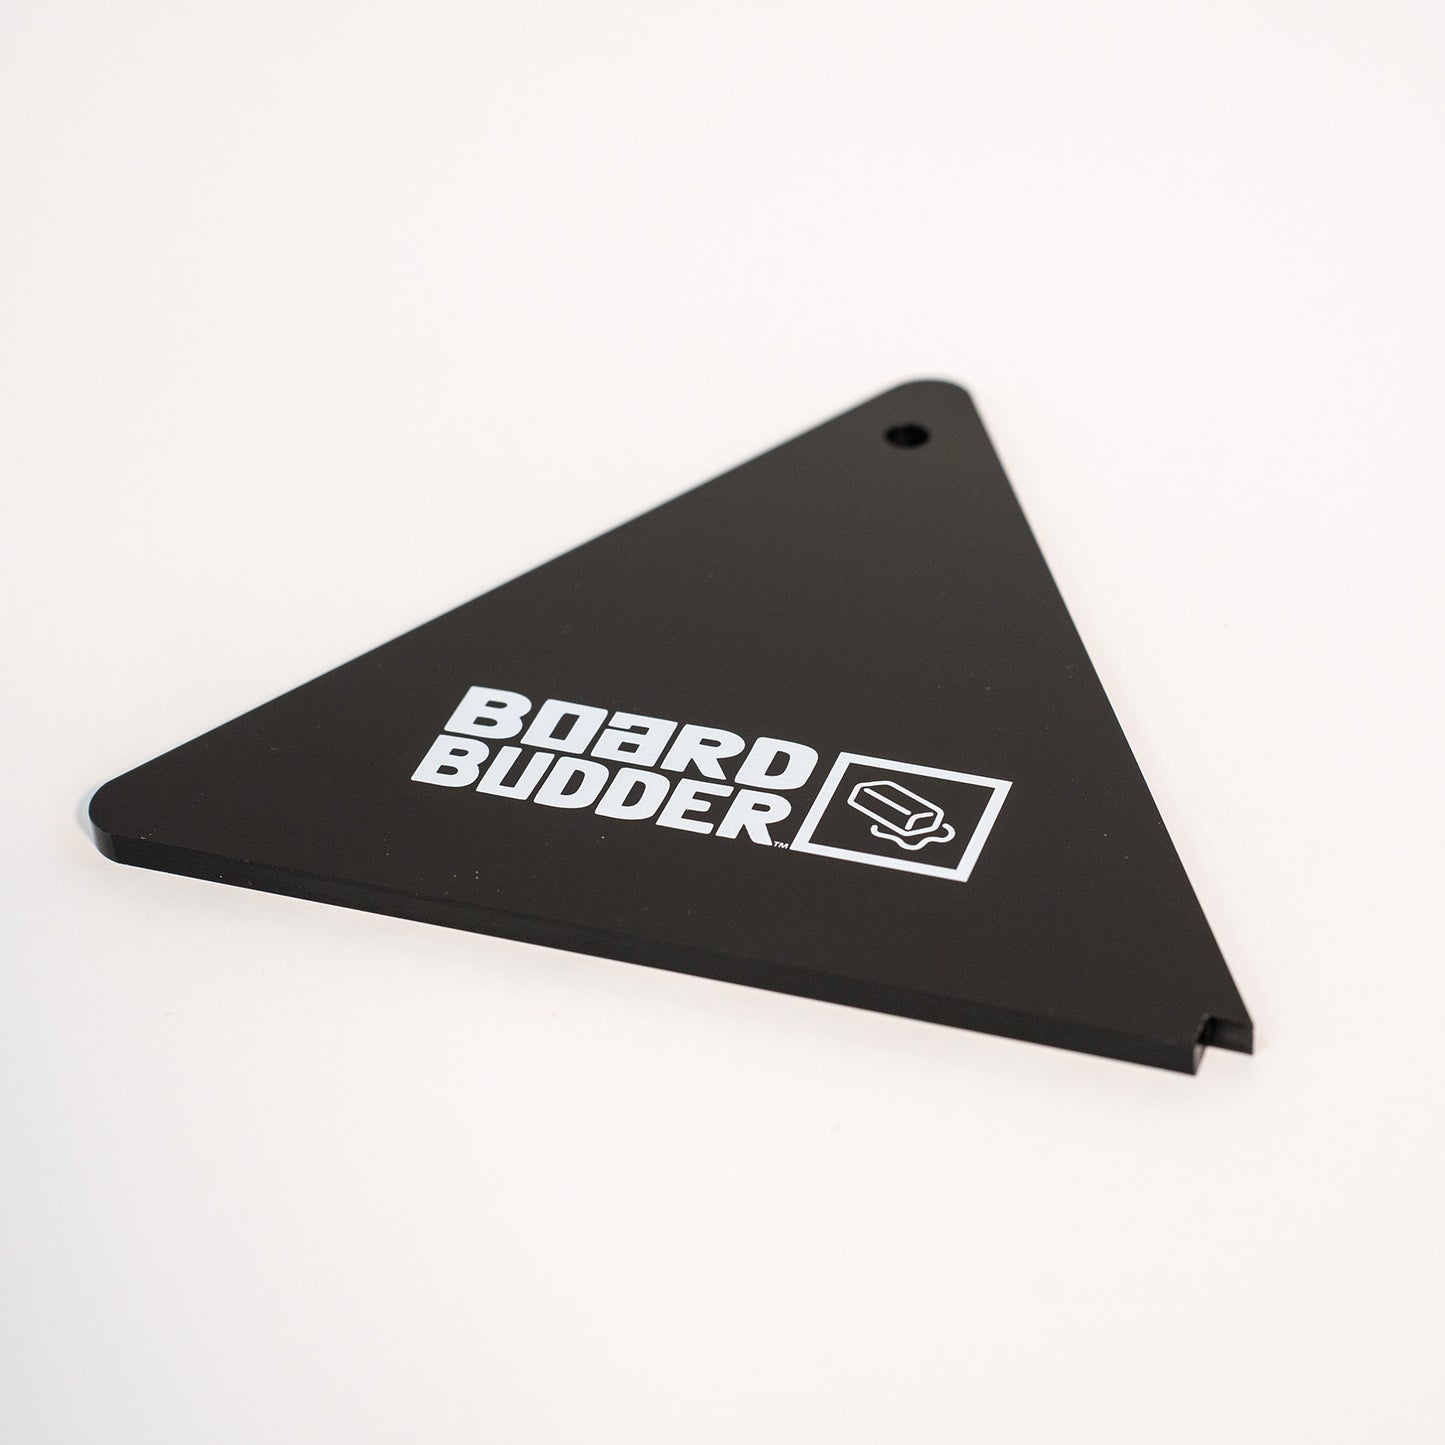 Board Budder Intro Wax Kit